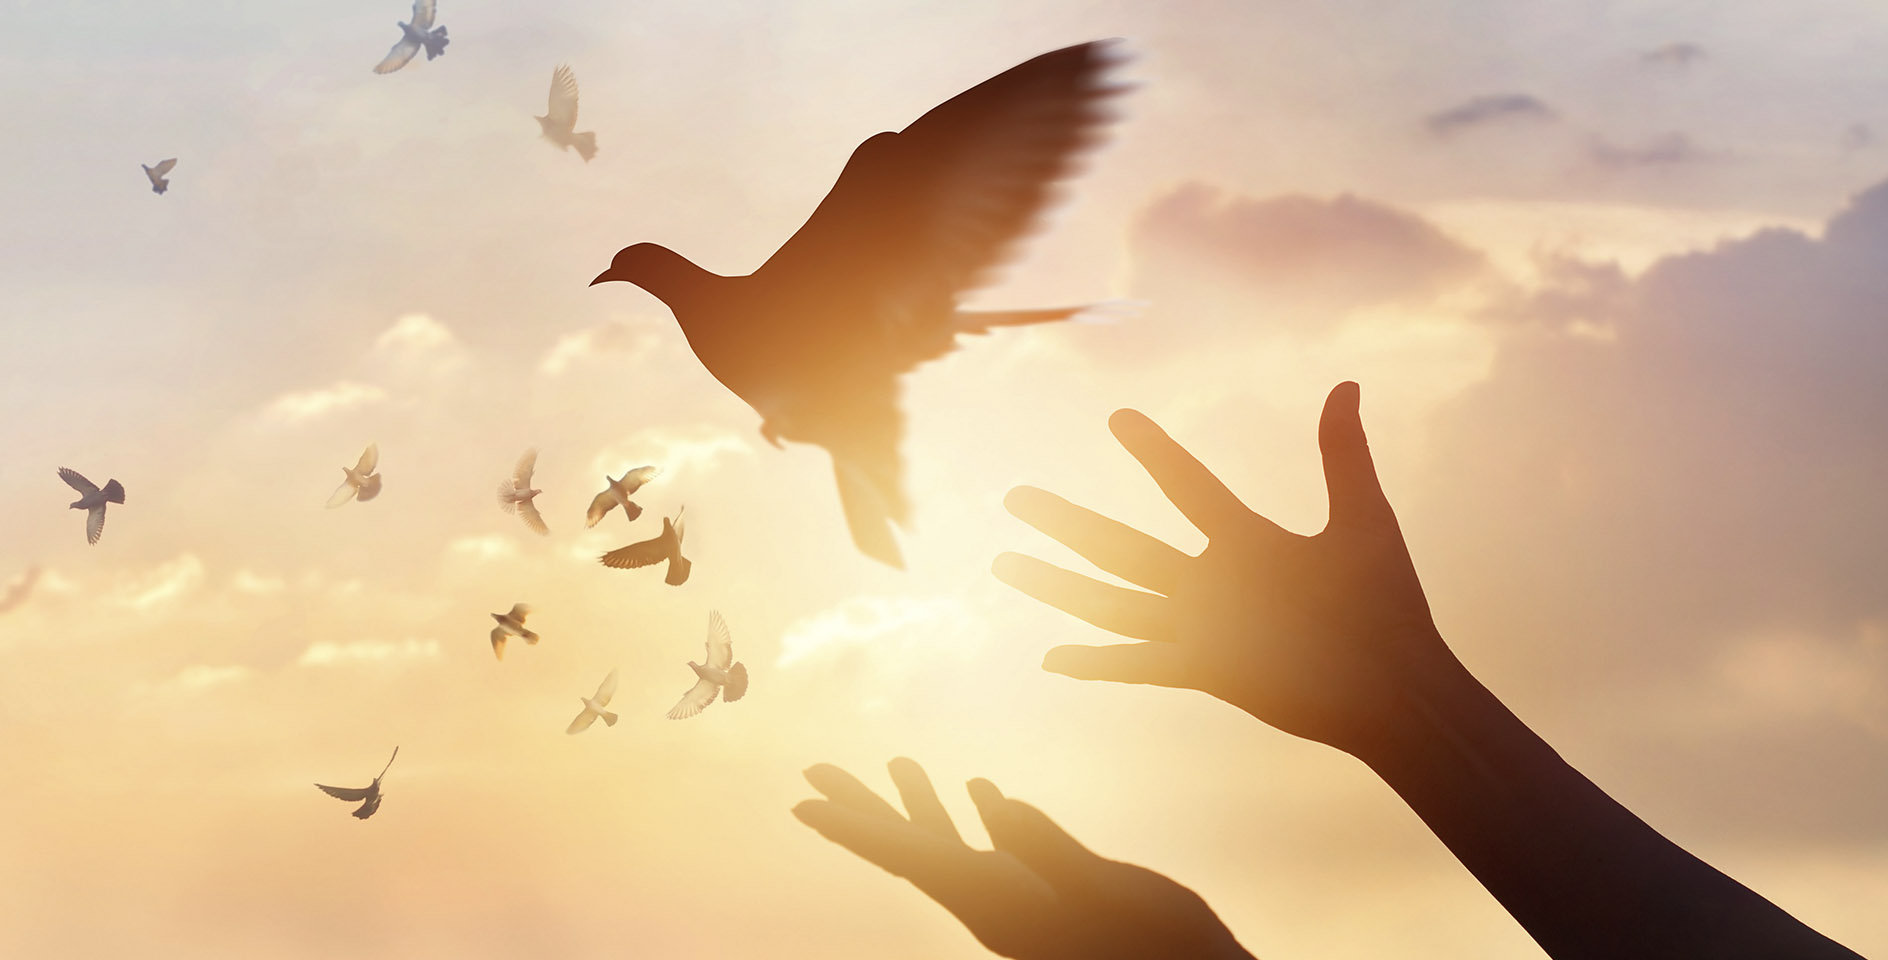 Автономная свобода. Свободная птица. Птица улетает с руки. Отпустить птицу в небо. Свобода счастье.